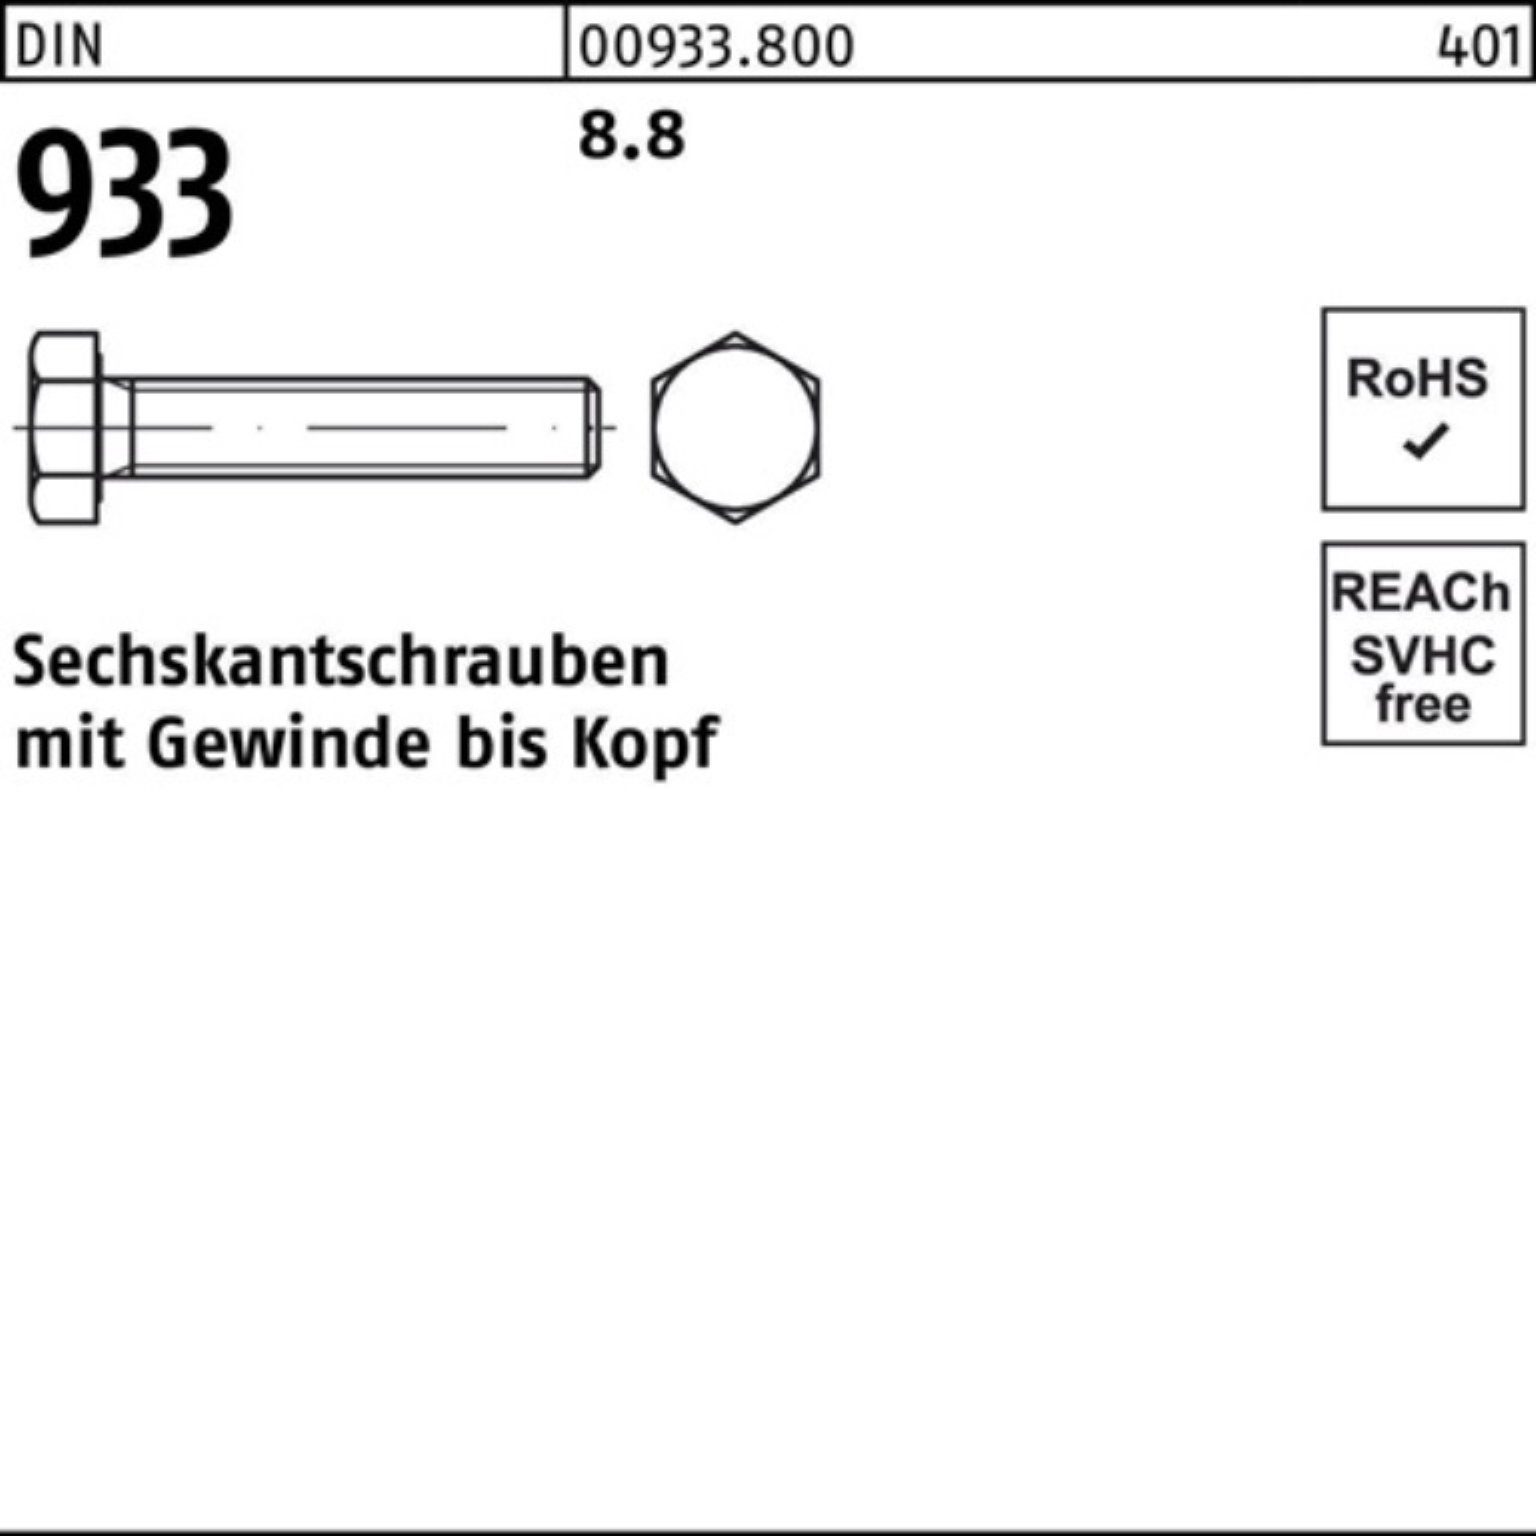 DIN 170 933 DIN VG Reyher 8.8 Sechskantschraube 1 100er Stück 933 Pack M42x Sechskantschraube